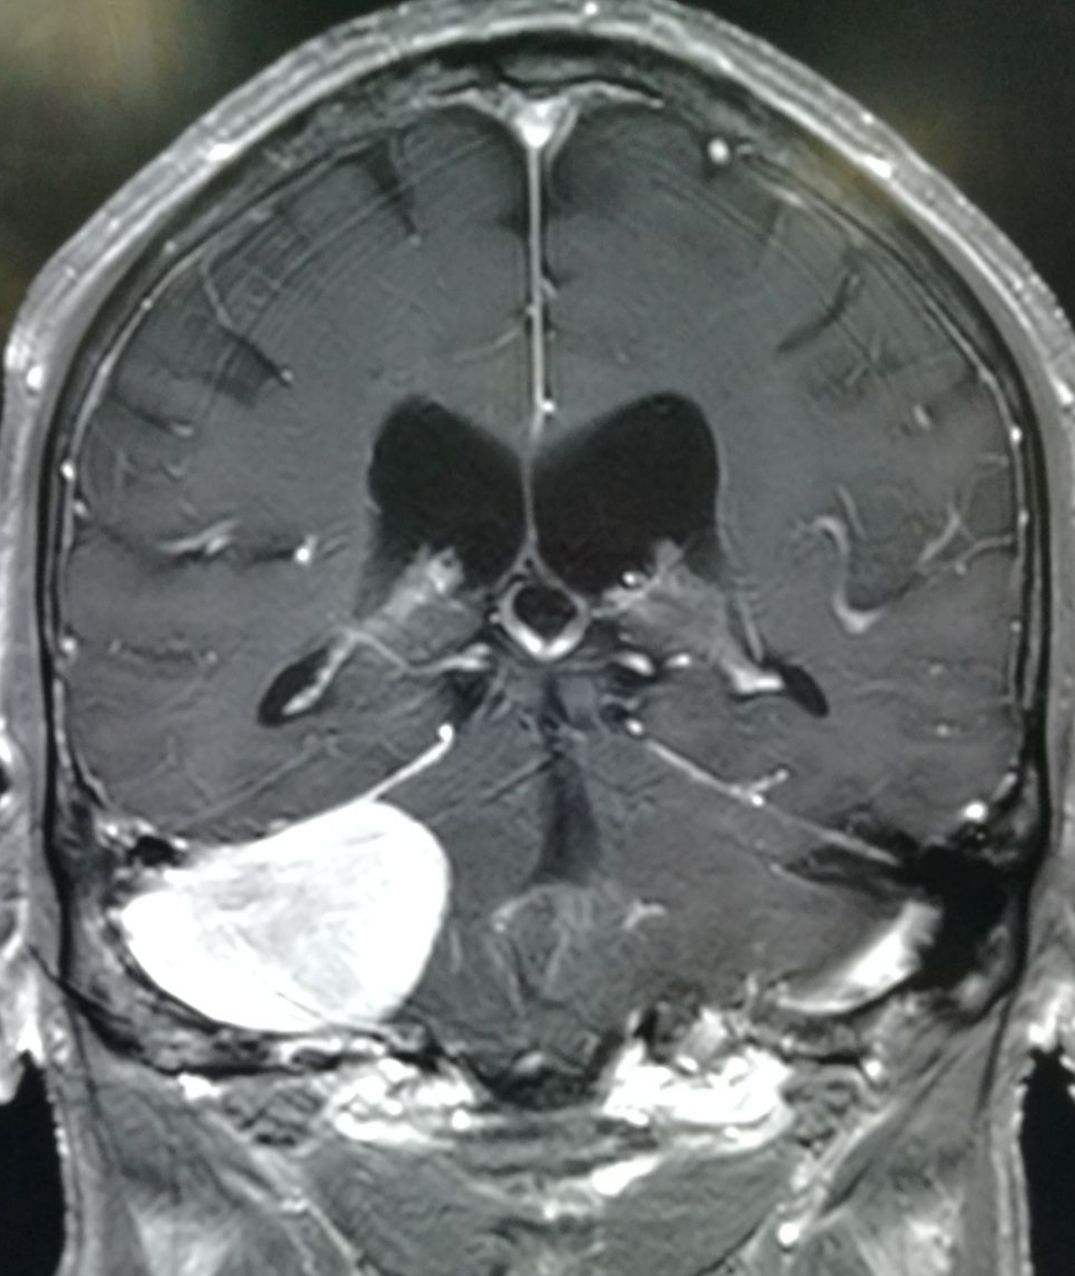 宣武医院脑血管专家黄牛票贩子挂号；大夫，听说放射检查有射线!MRI，就是磁共振，安全吗?的简单介绍